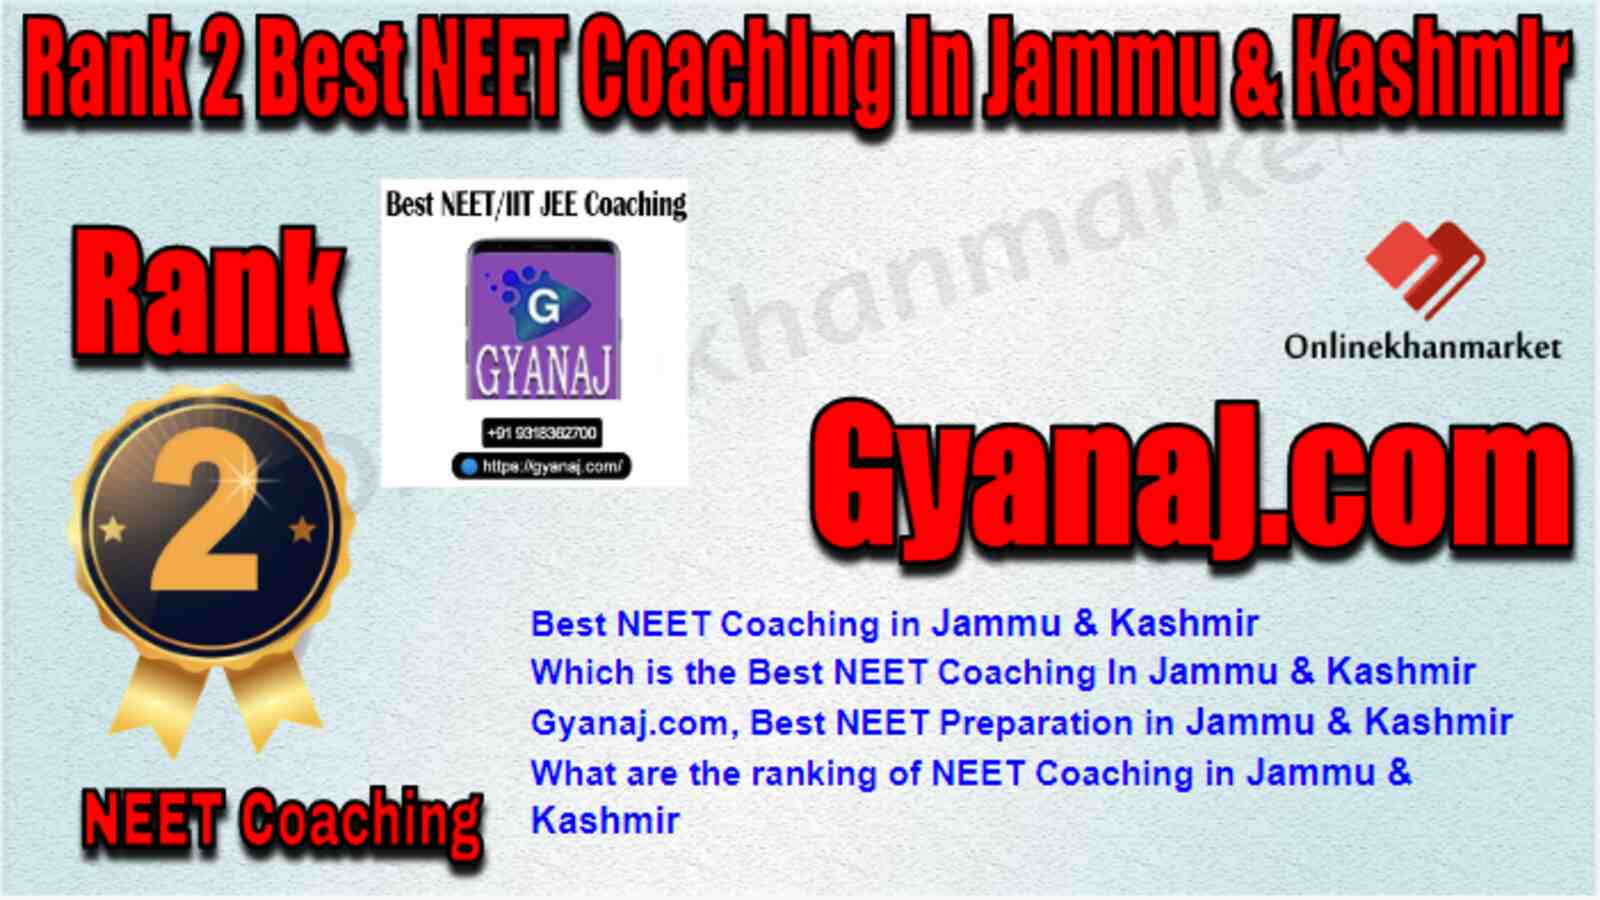 Rank 2 Best NEET Coaching in Jammu & Kashmir